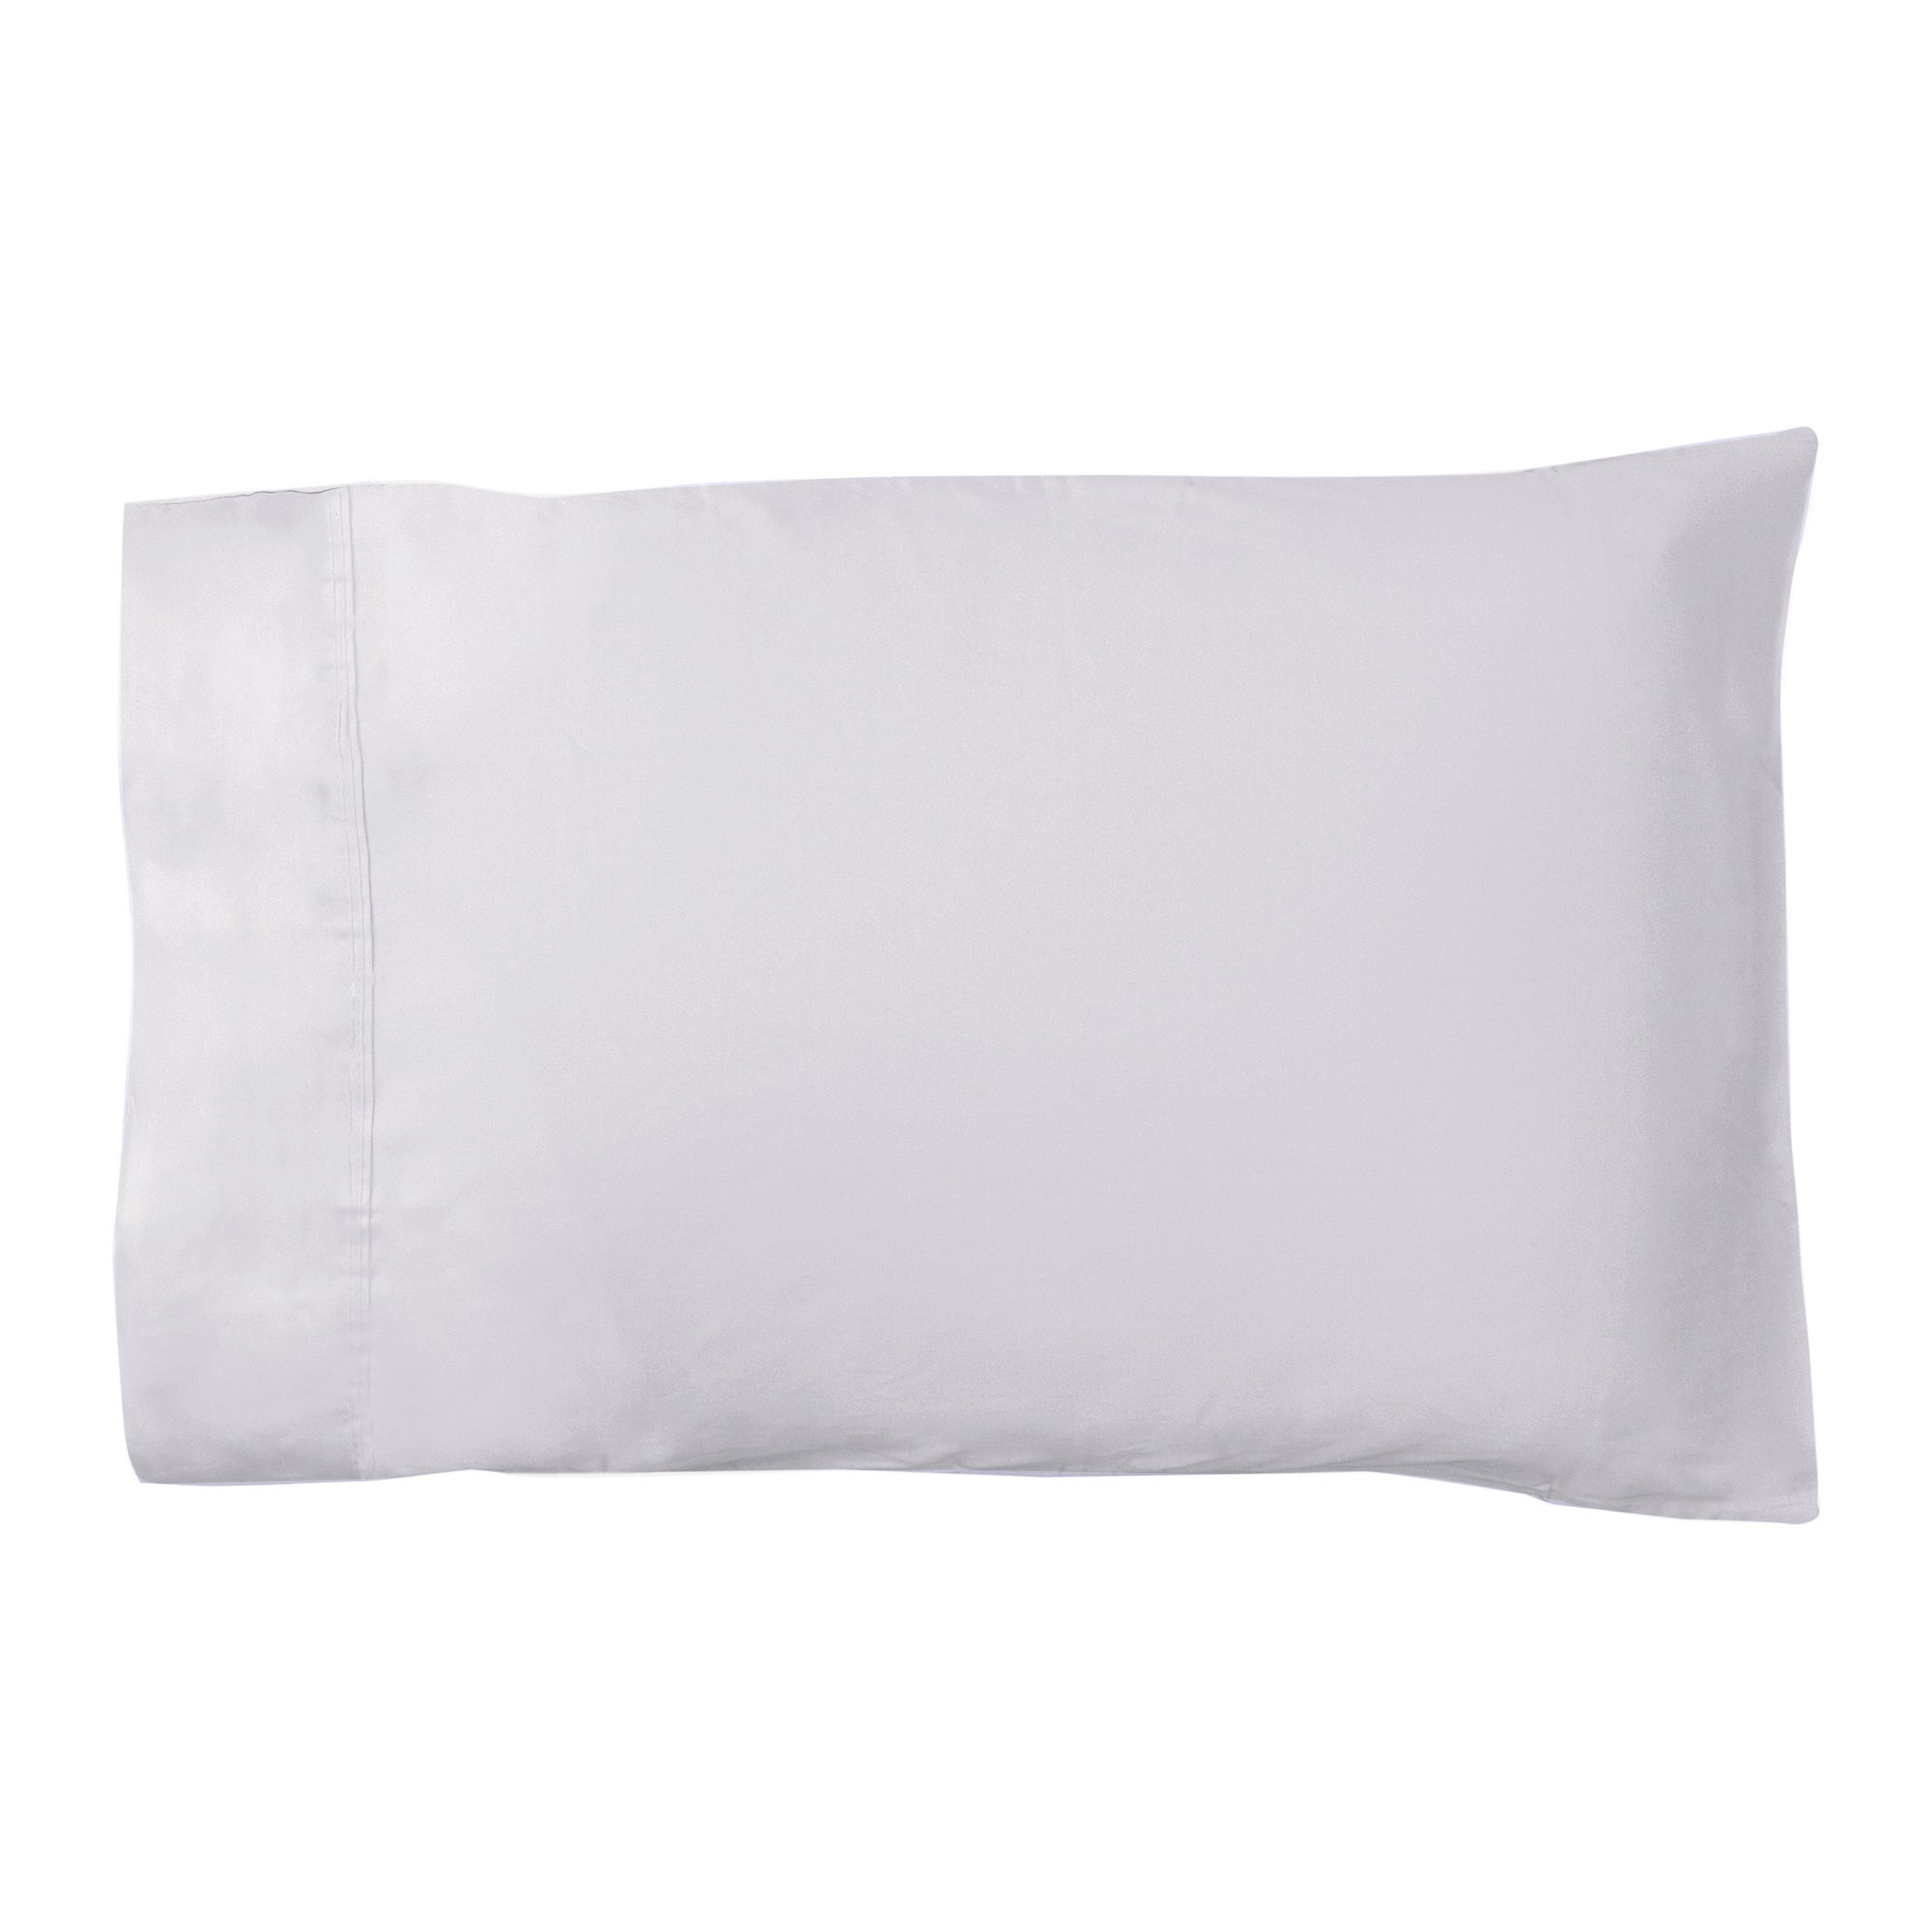 Dorma 500 Thread Count 100% Cotton Sateen Plain Cuffed Pillowcase